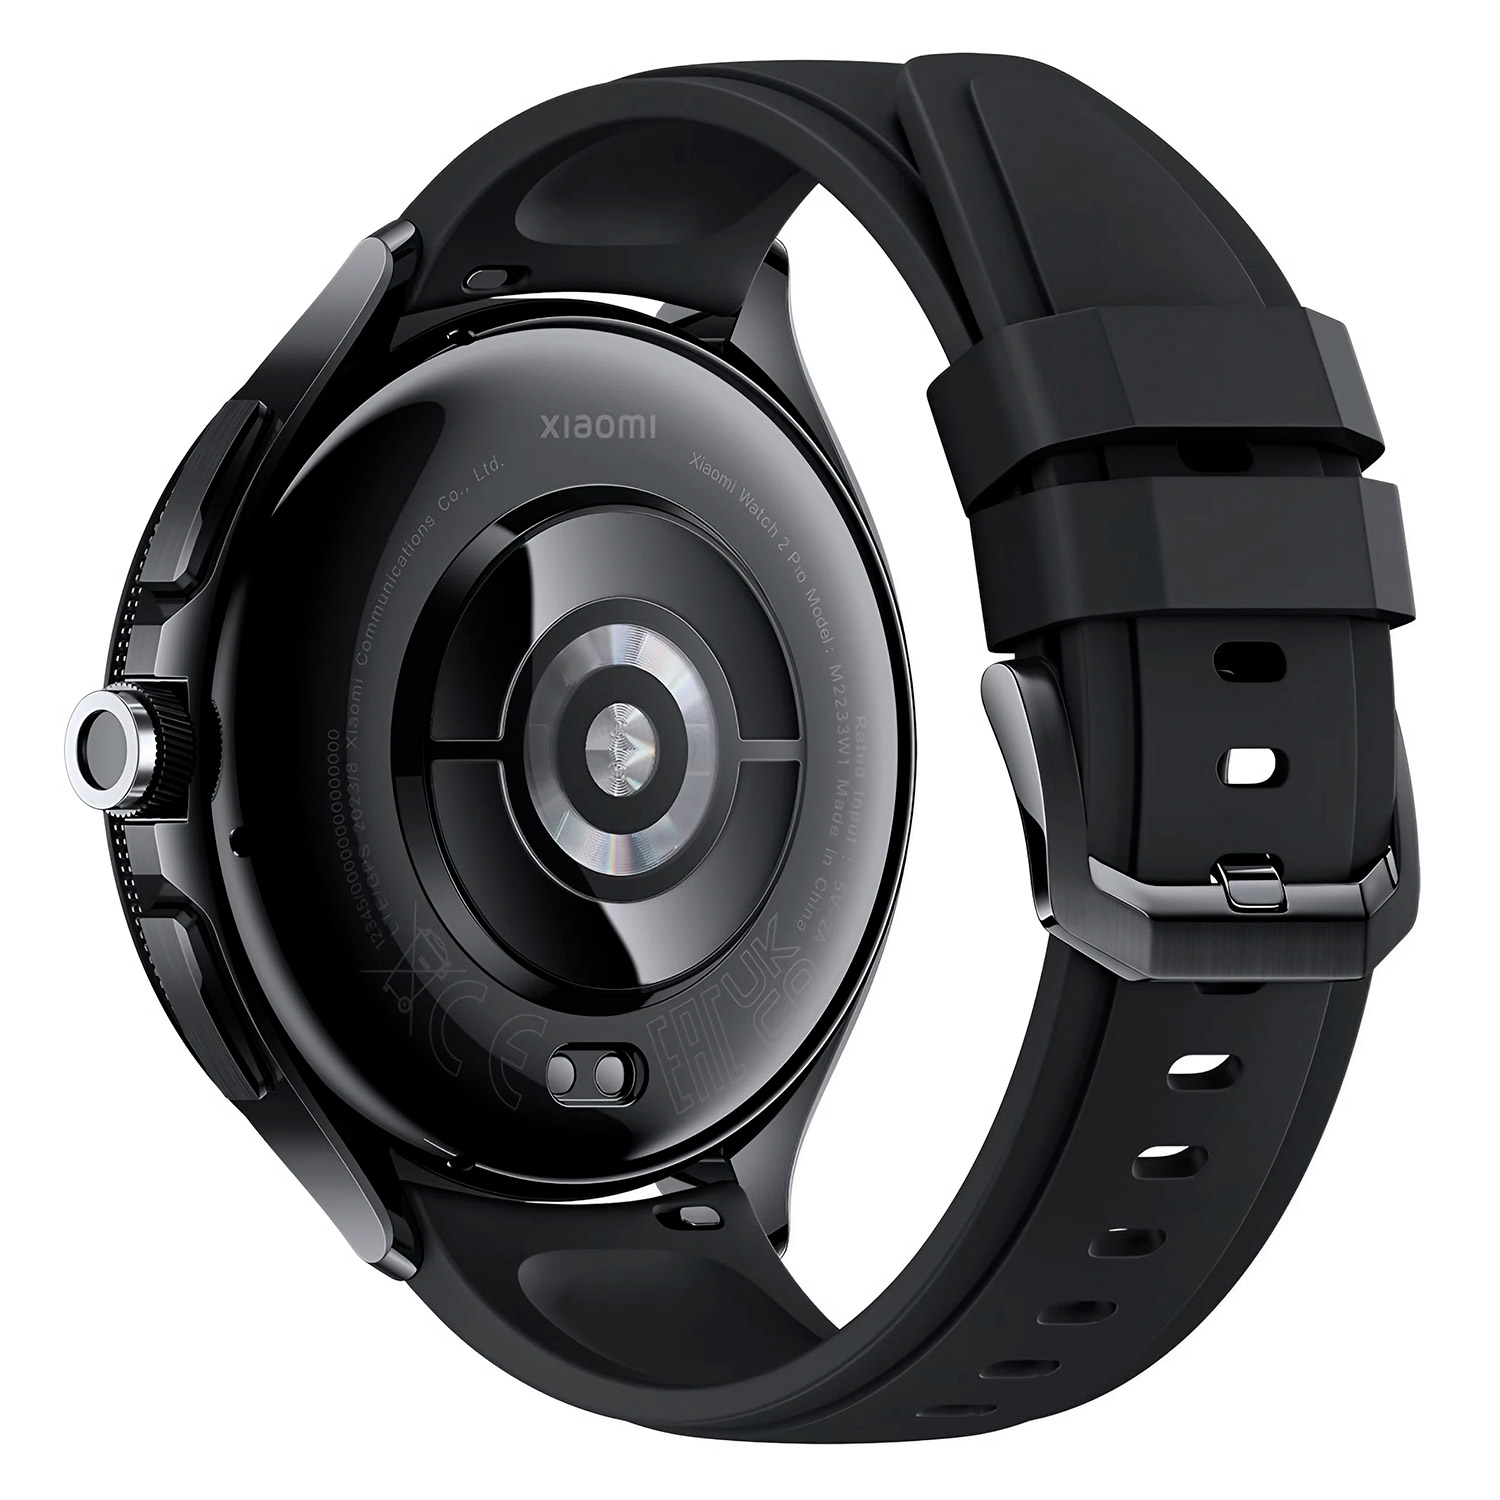 Smartwatch Xiaomi Watch 2 Pro M2234W1 - Preto